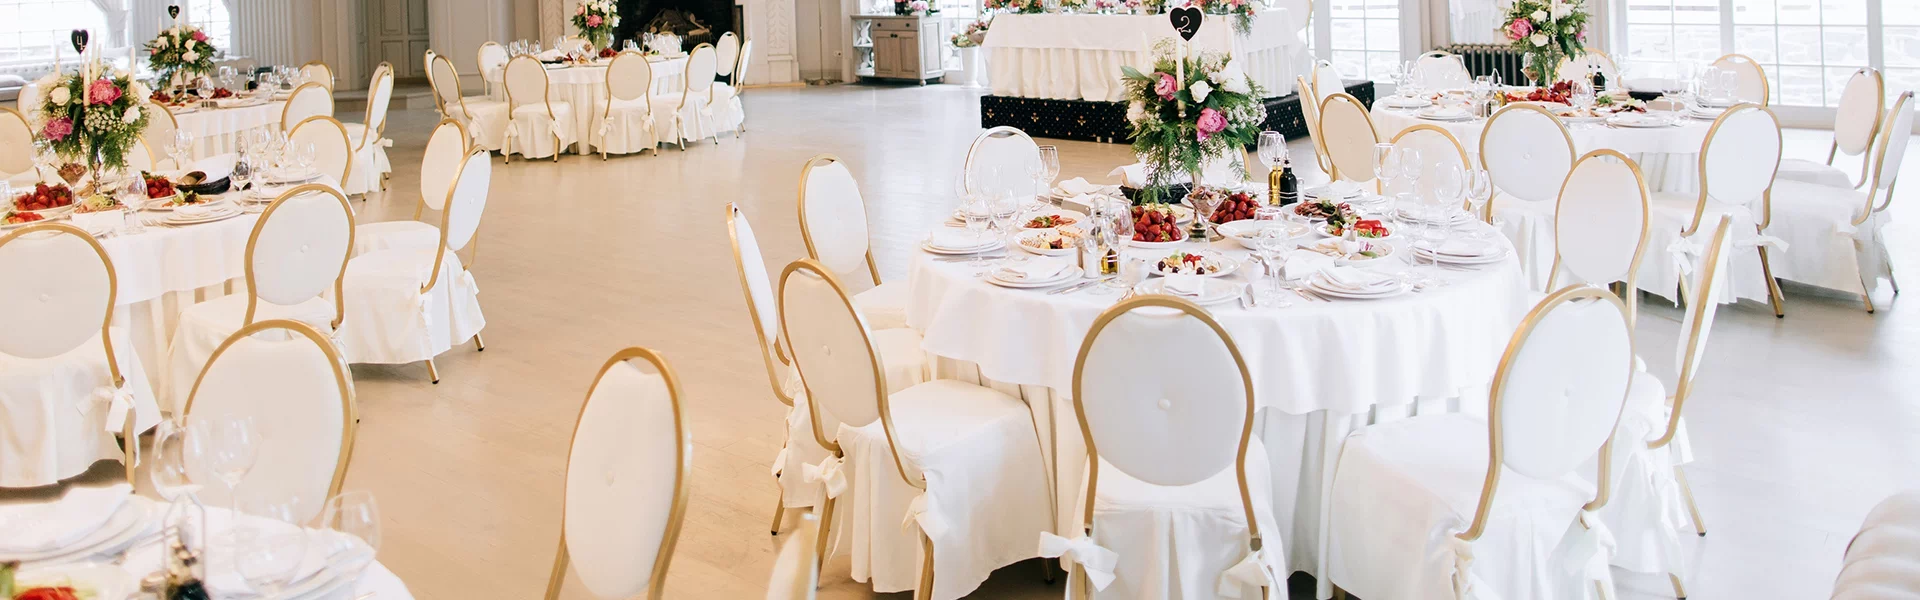 stoły zastawione i krzesła w białym kolorze ślubne